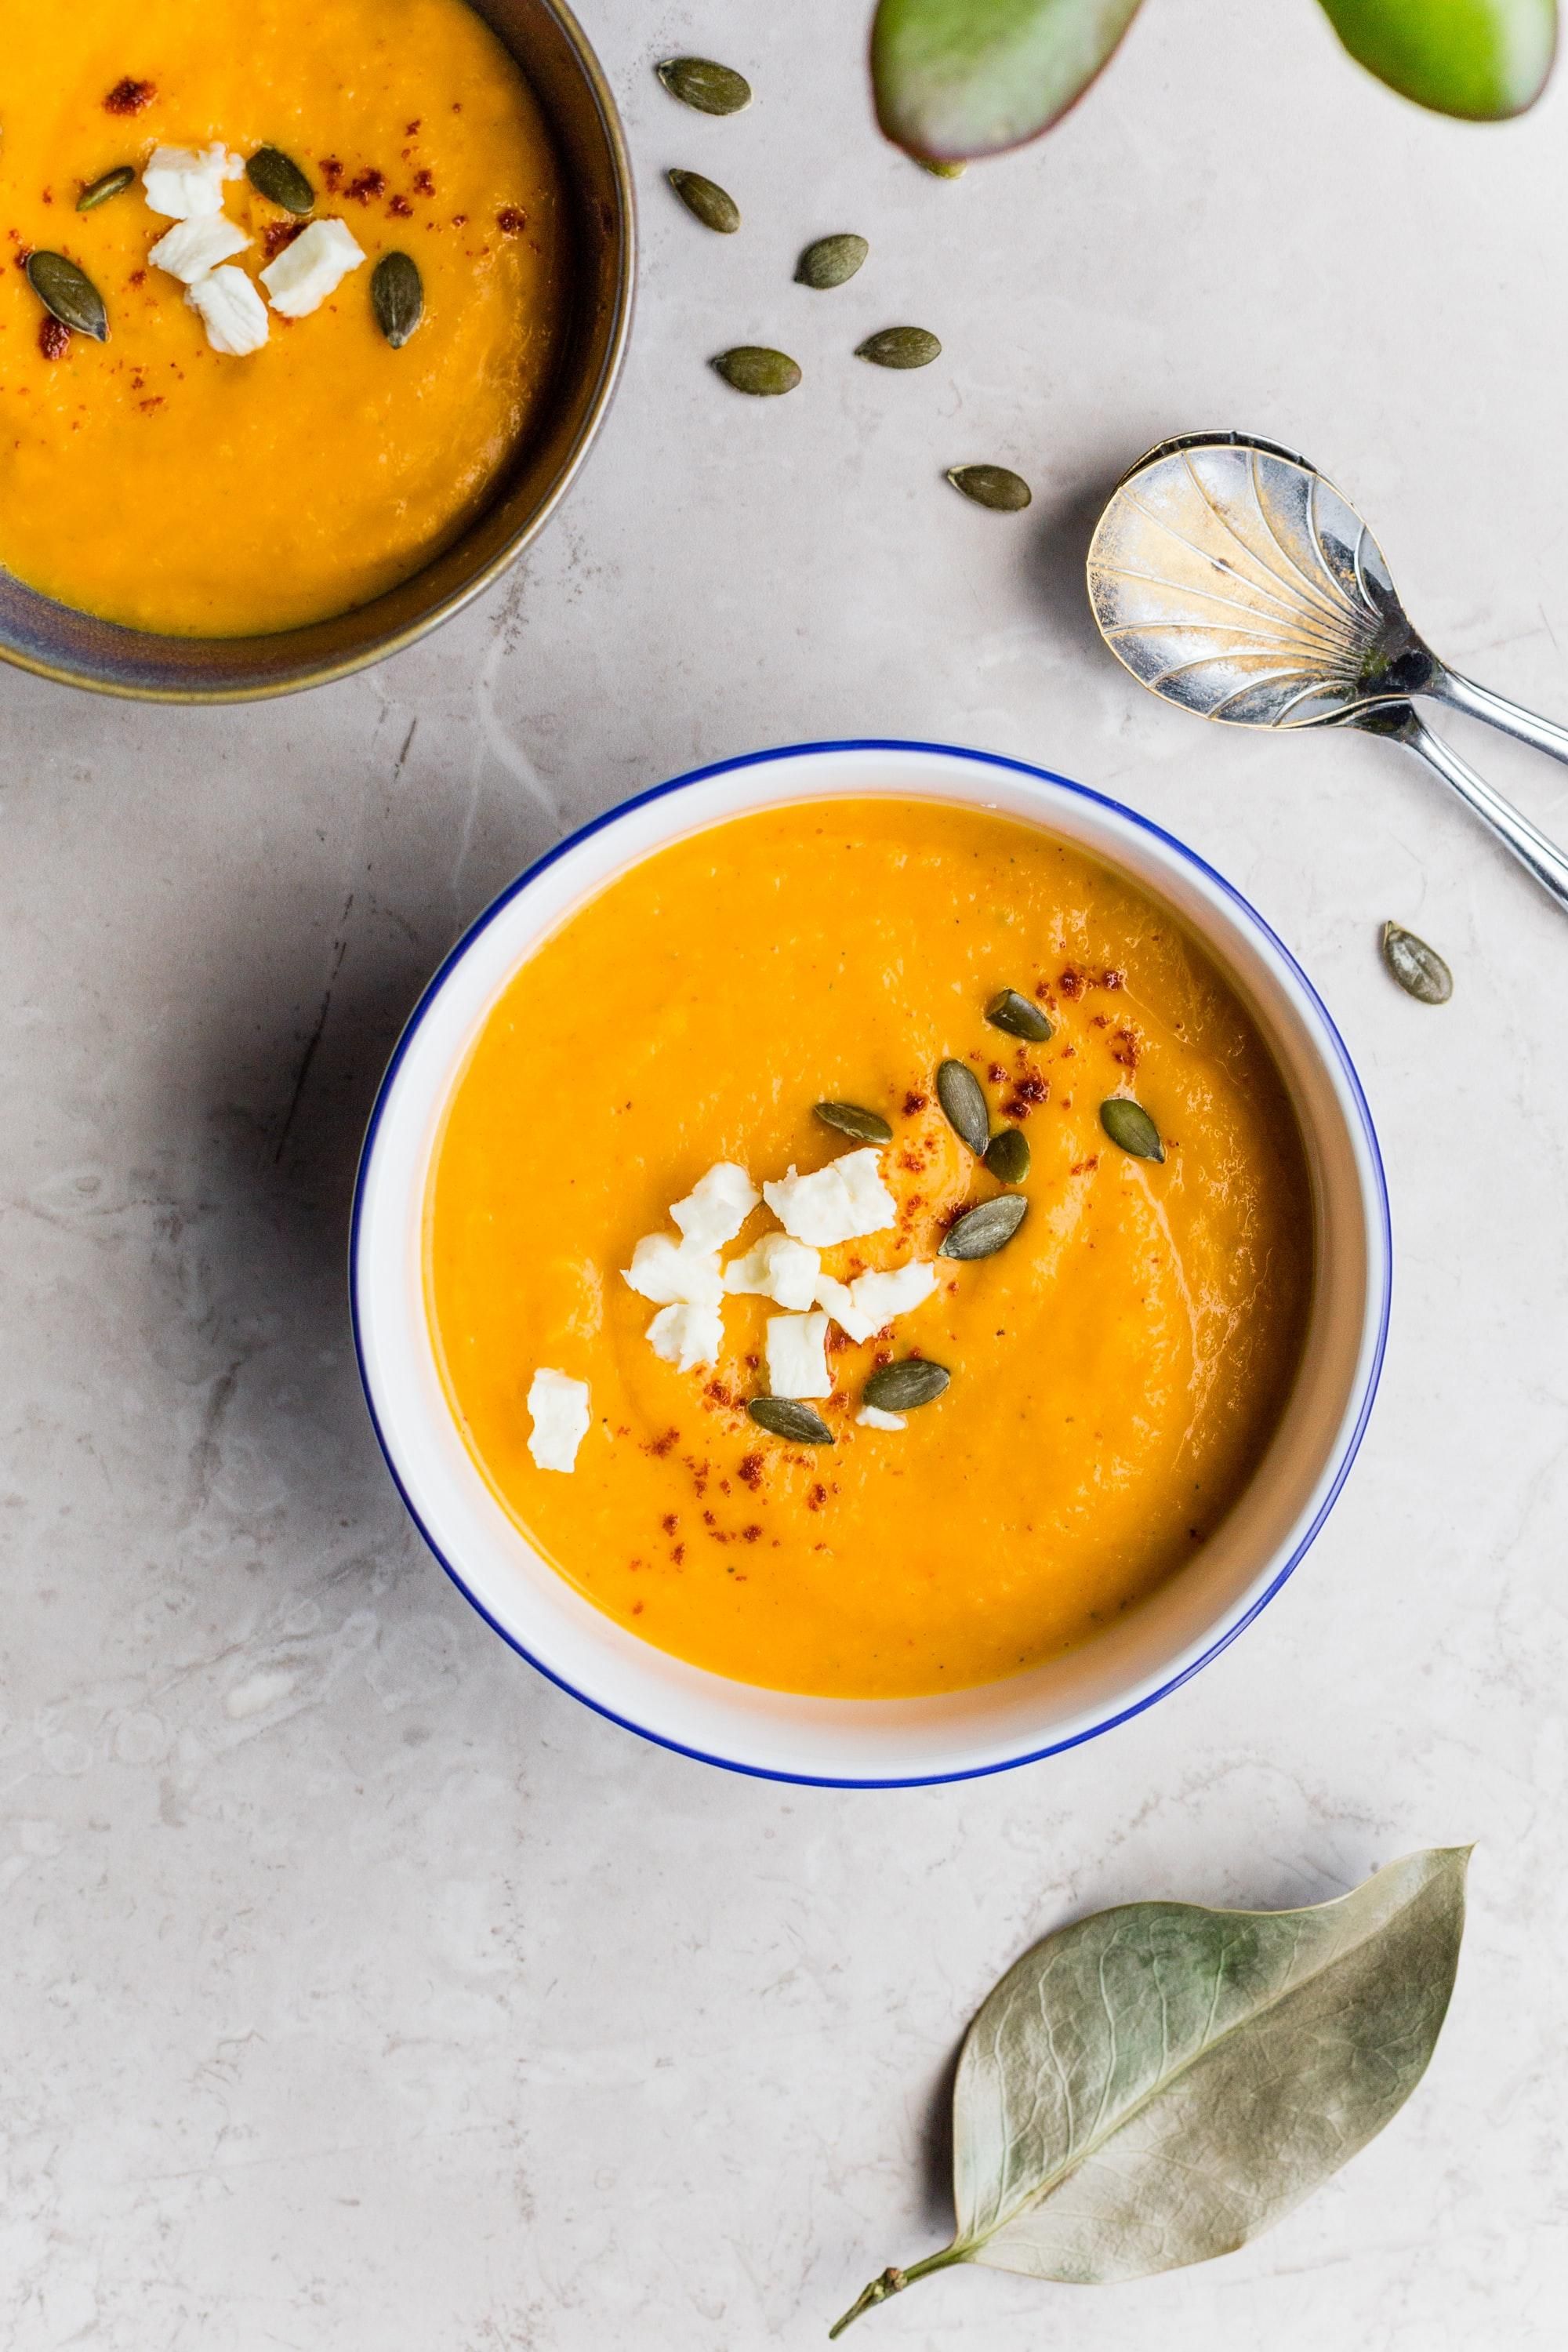 Идея для семейного обеда: как приготовить нежный, но очень сытный суп-пюре из моркови - Идеи